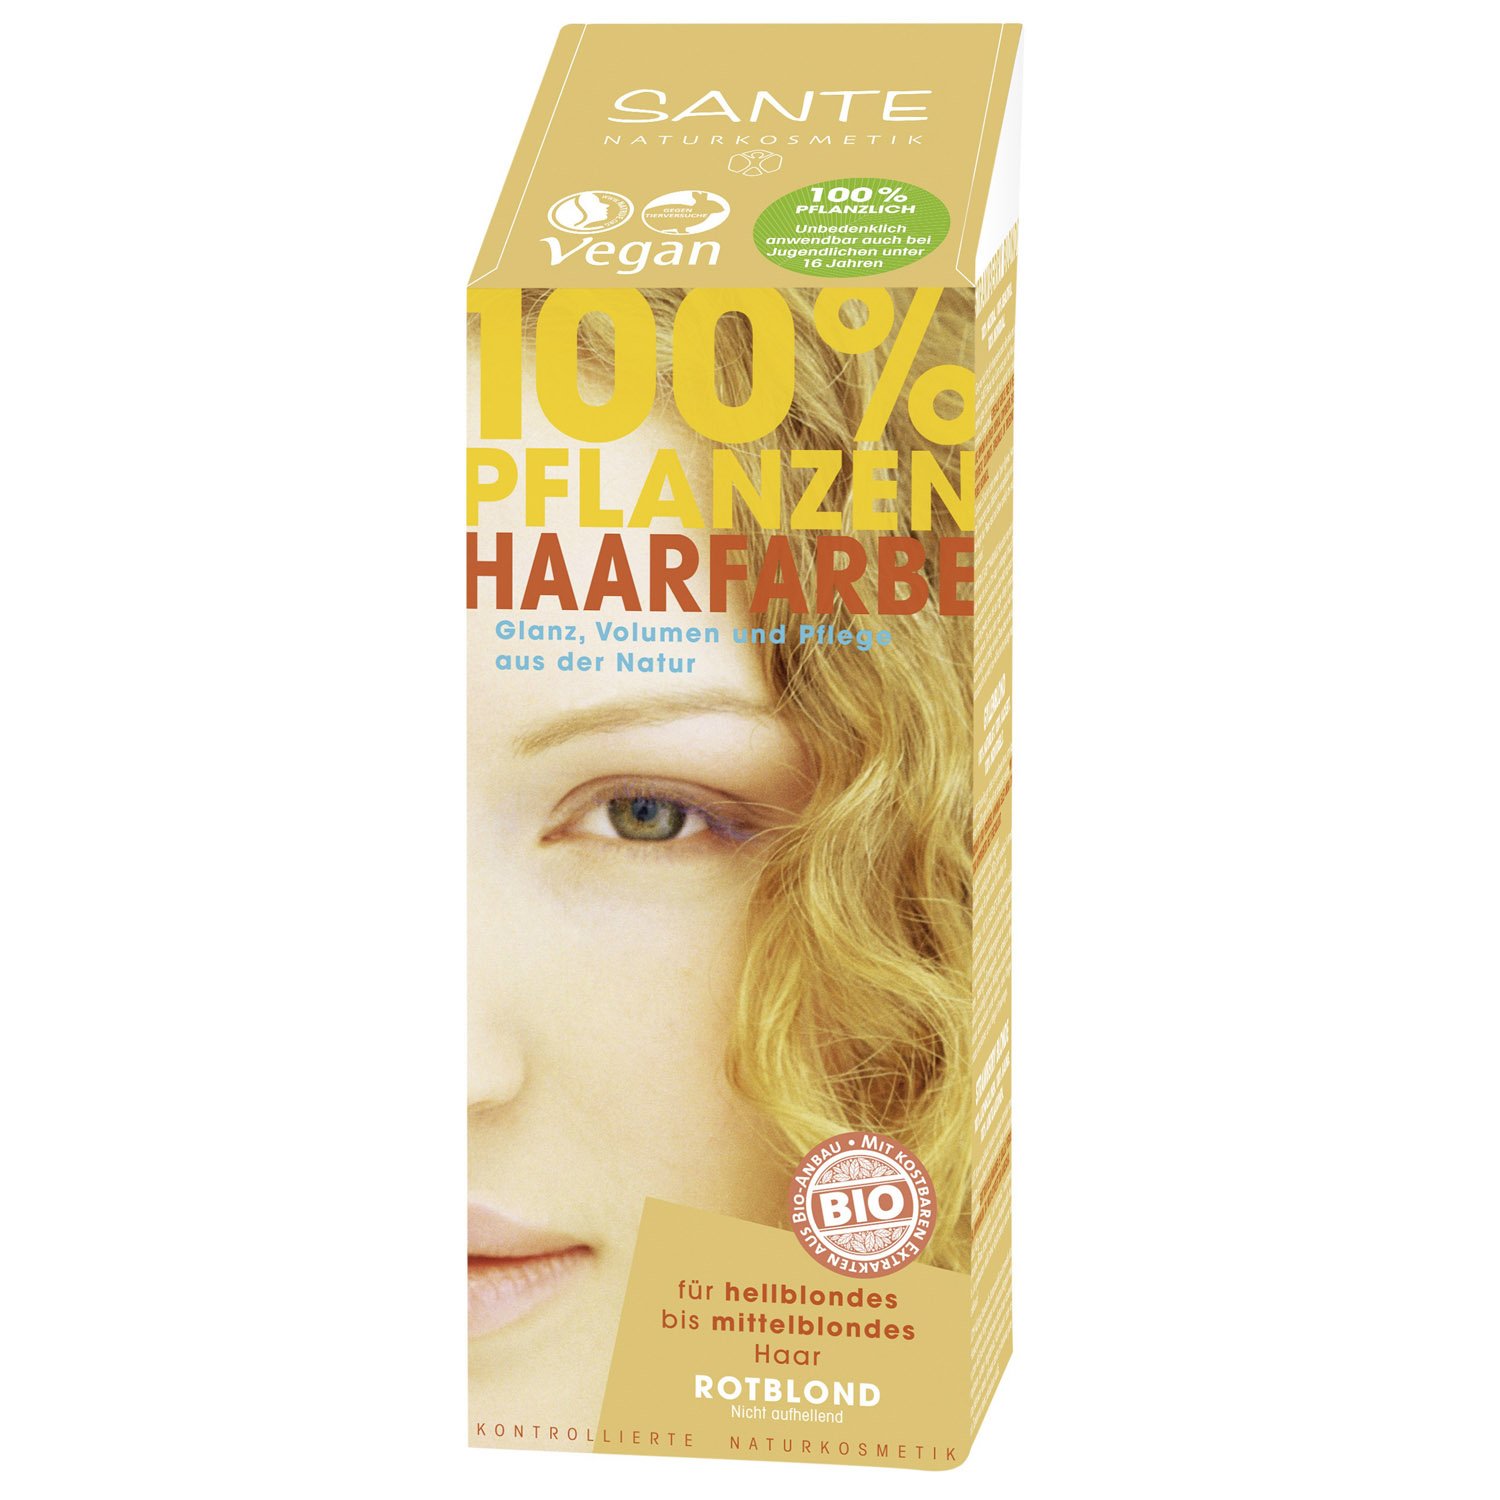 Біо-фарба для волосся Sante Strawberry Blonde, порошкова, рослинна, 100 г - фото 1